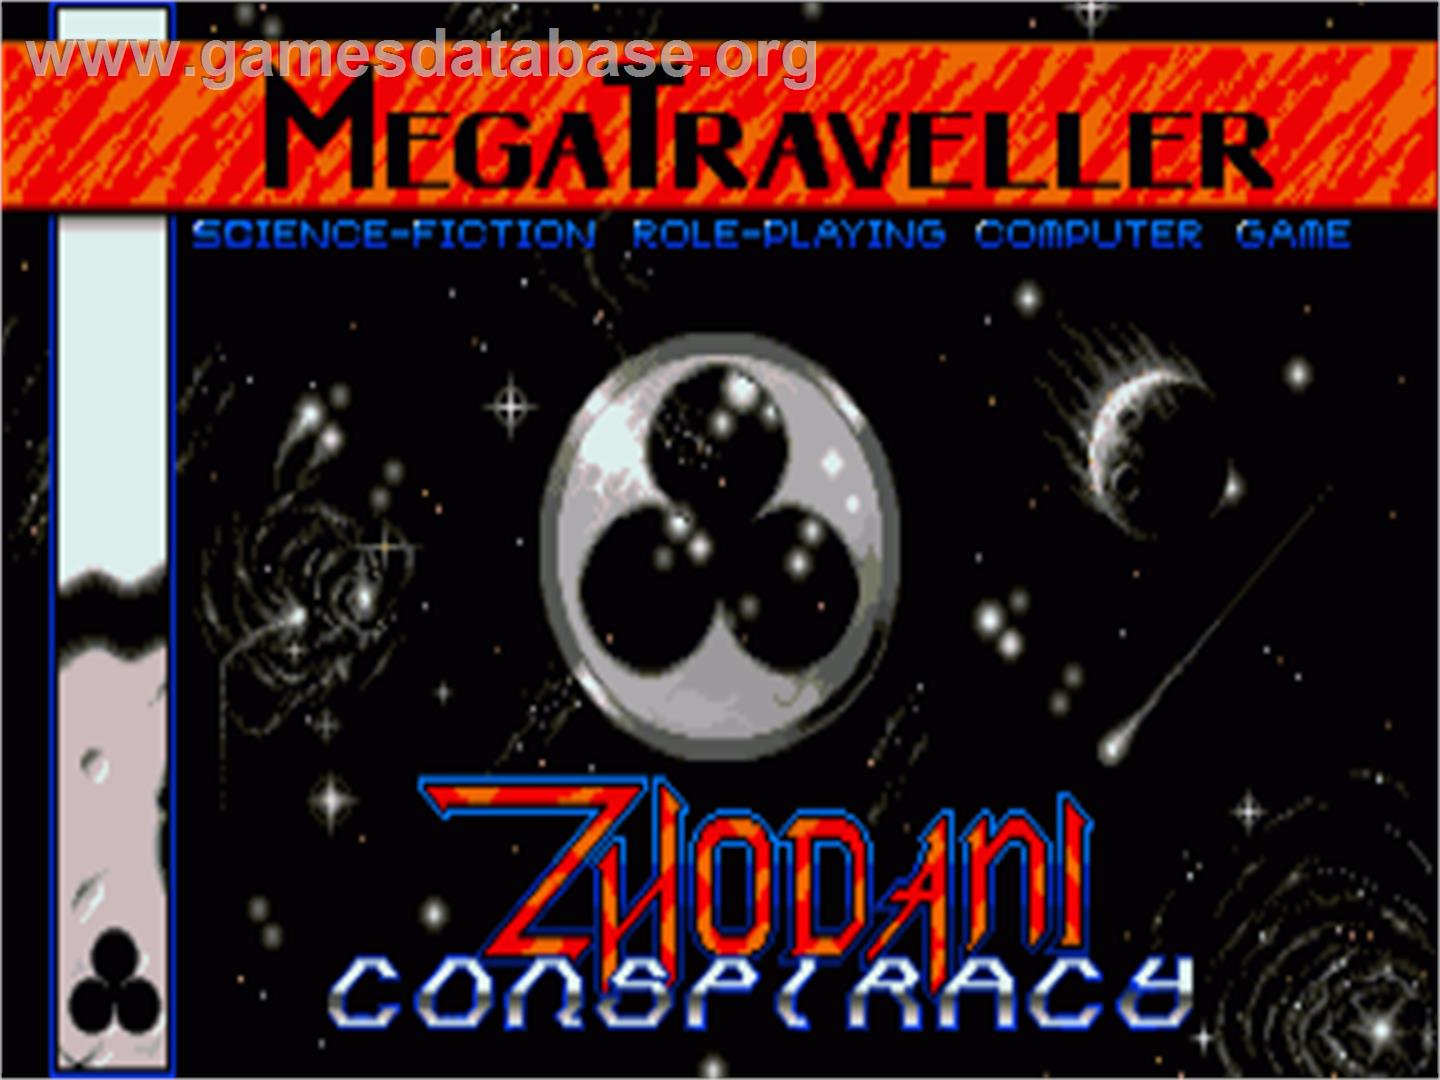 MegaTraveller 1: The Zhodani Conspiracy - Commodore Amiga - Artwork - Title Screen